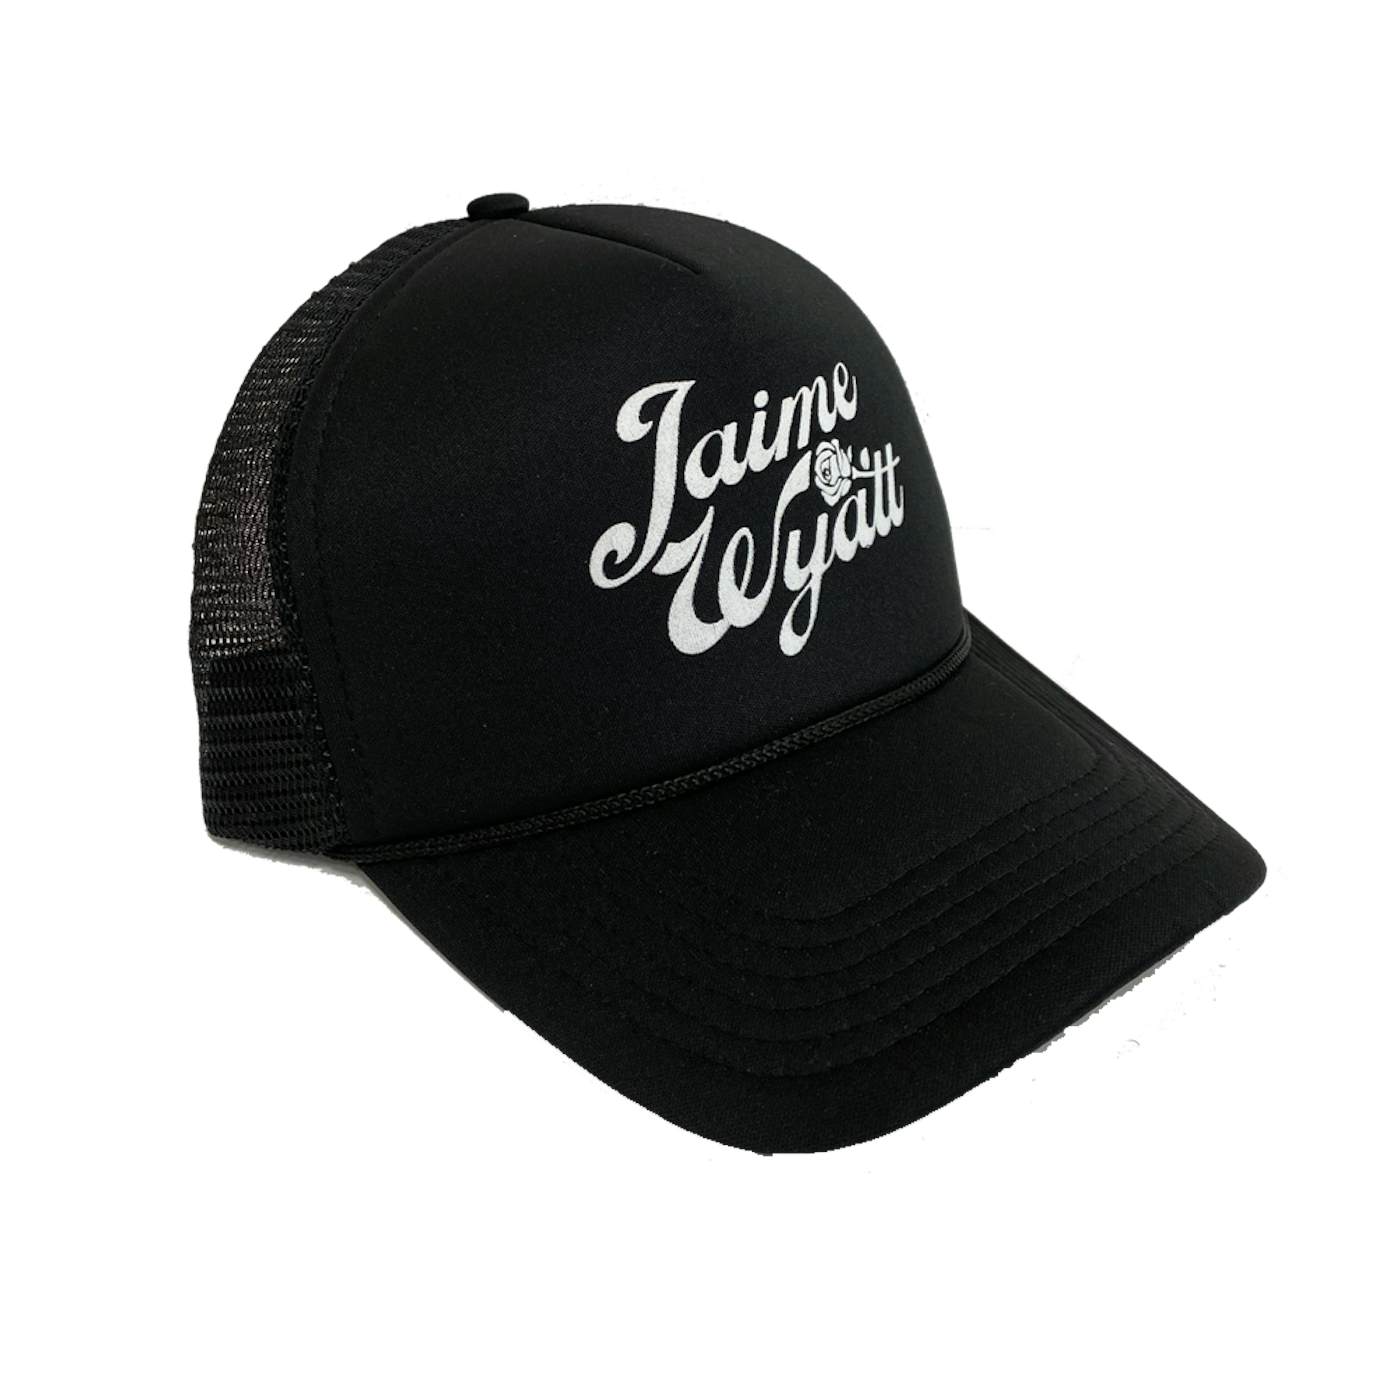 Jaime Wyatt Rose Hat